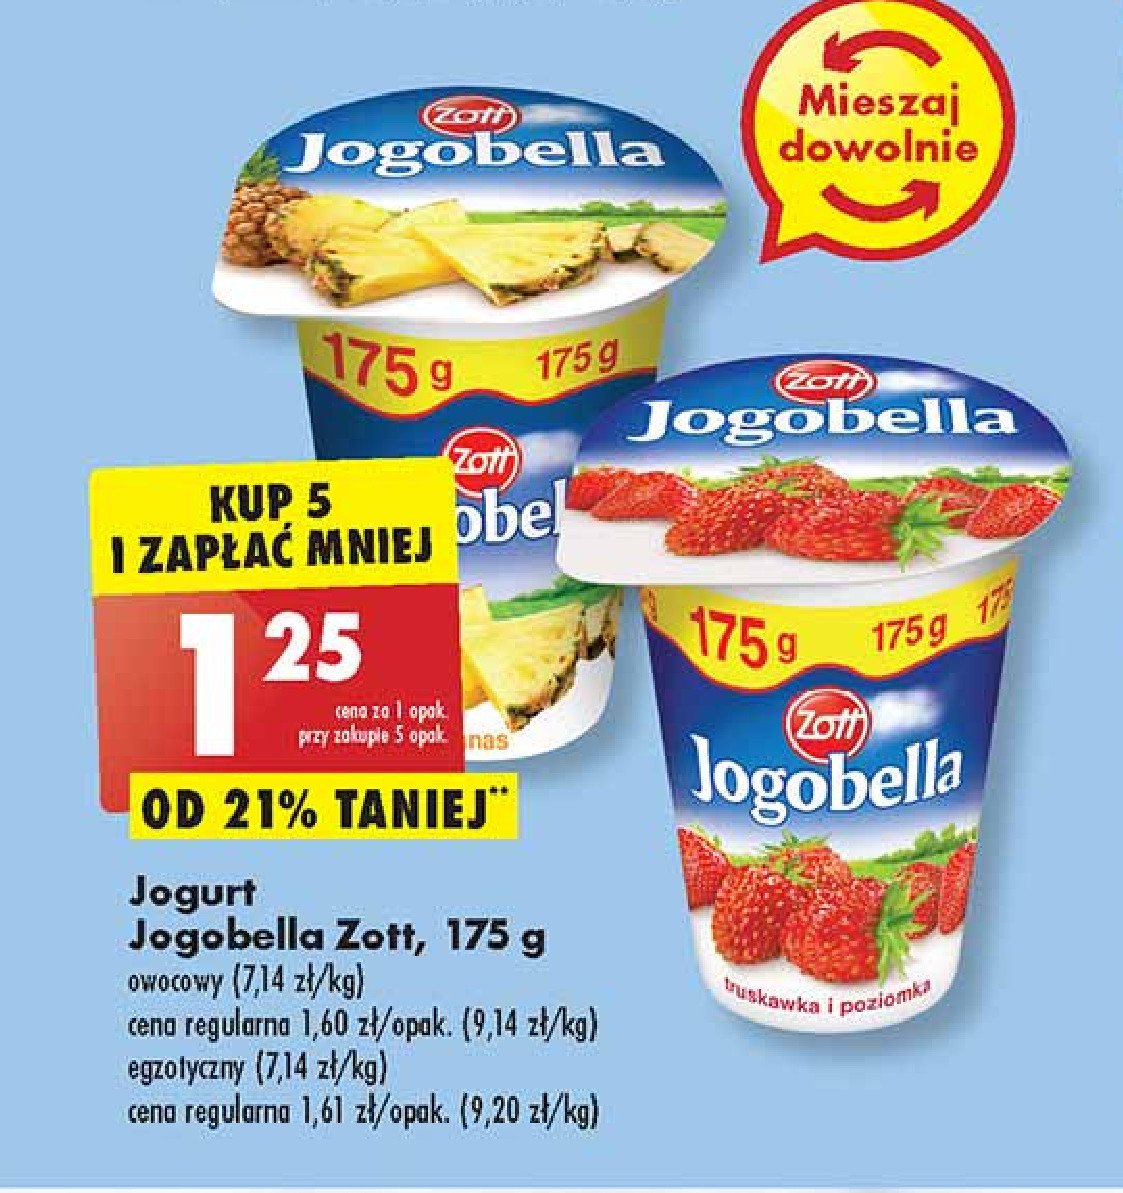 Jogurt ananas Jogobella promocje